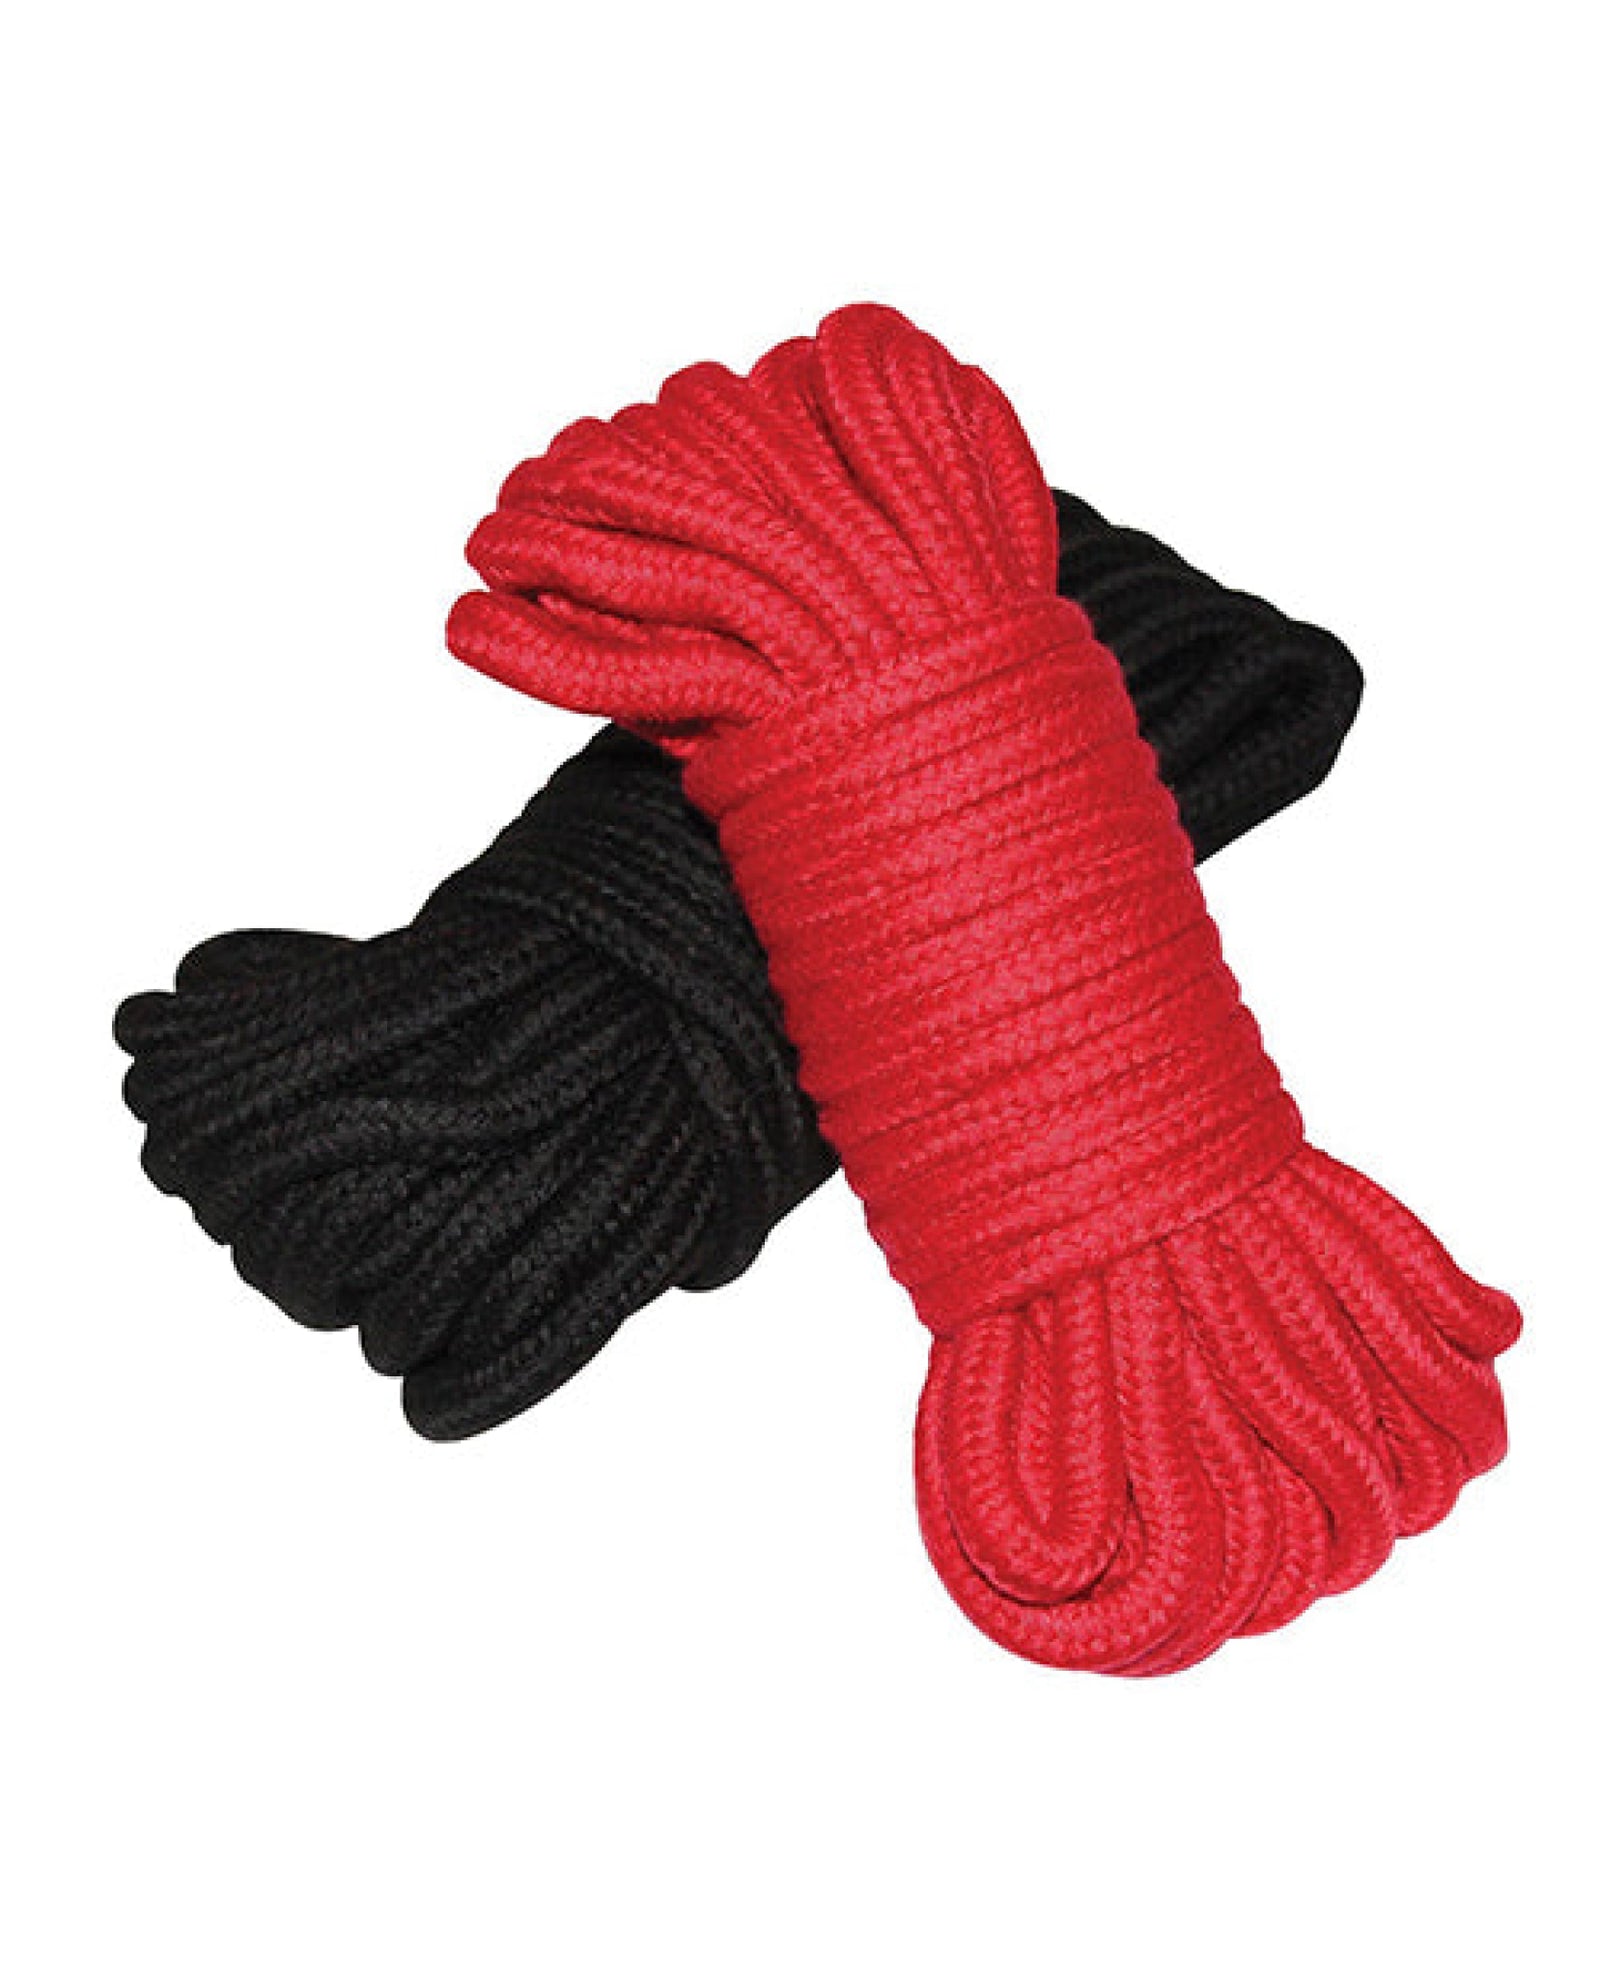 Plesur Cotton Shibari Bondage Rope 2 Pack Plesur